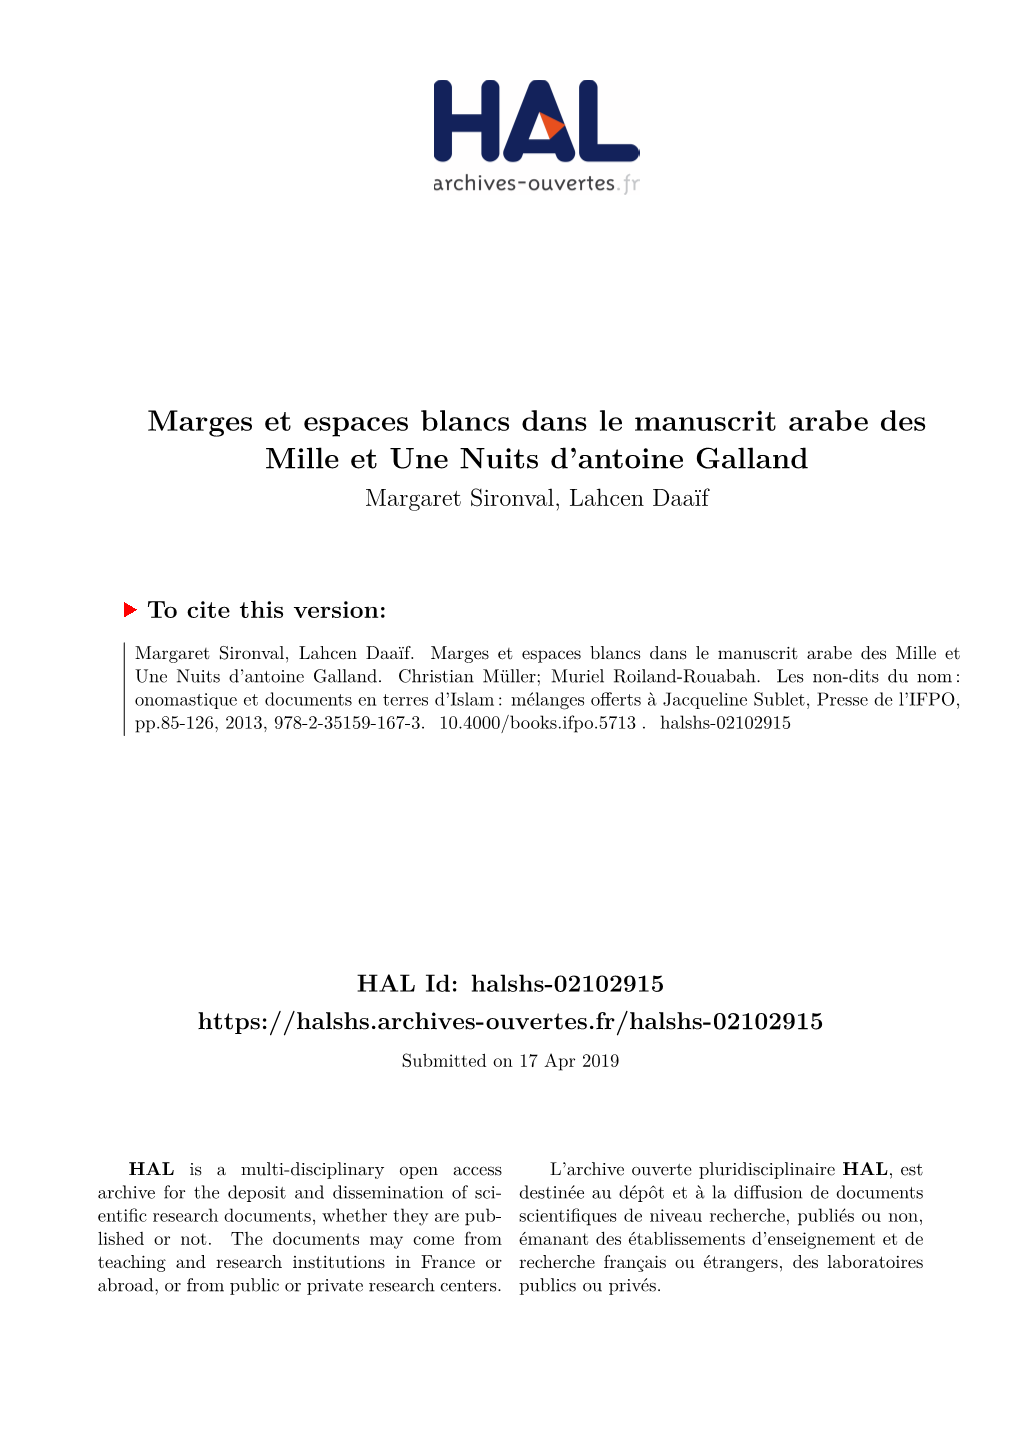 Marges Et Espaces Blancs Dans Le Manuscrit Arabe Des Mille Et Une Nuits D'antoine Galland